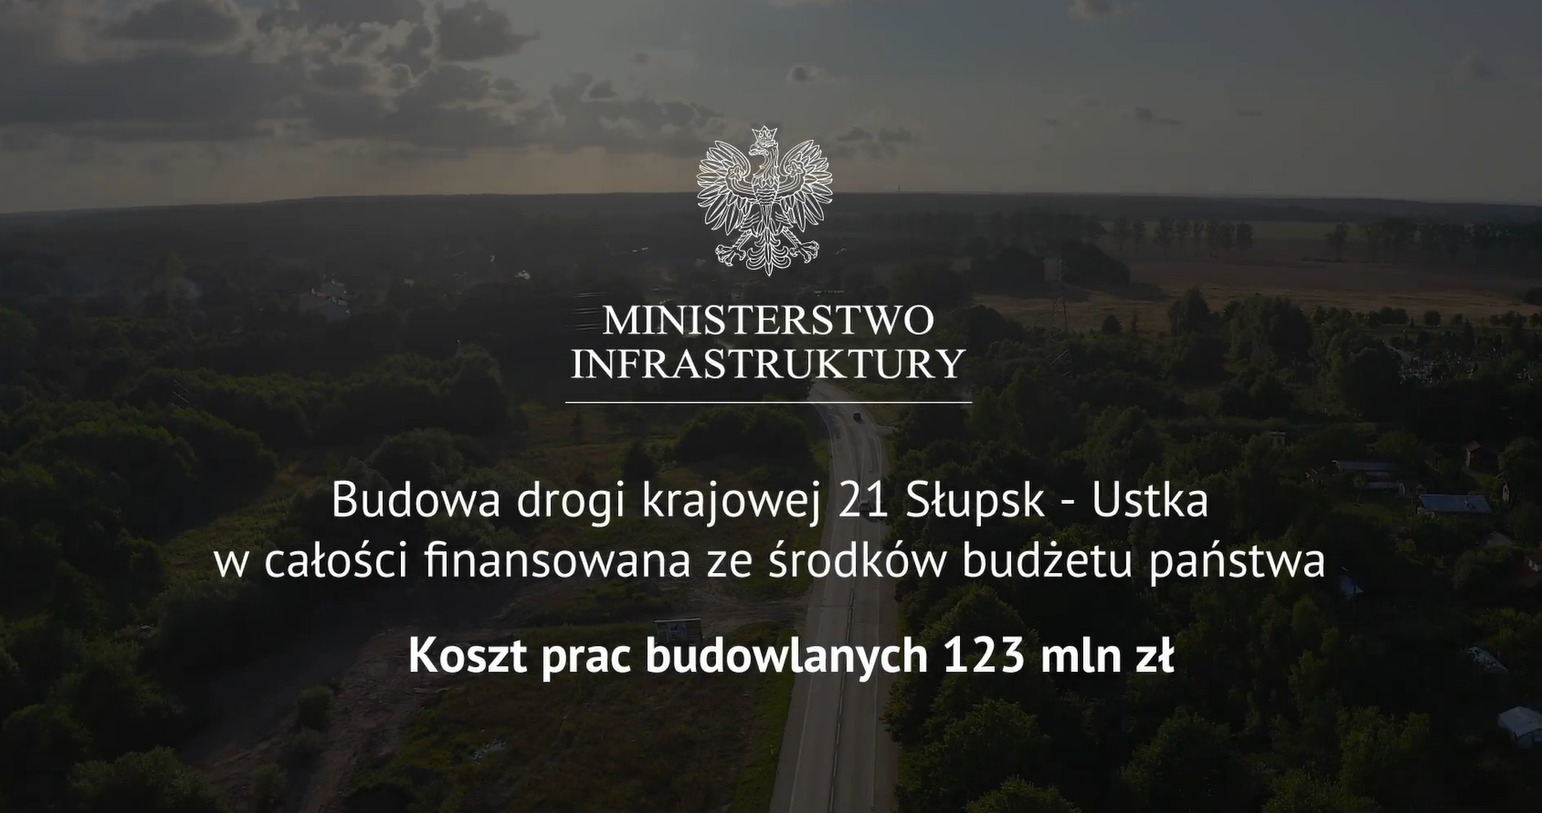 Świetne wiadomości – podpisaliśmy umowę na rozbudowę DK21 Słupsk-Ustka!